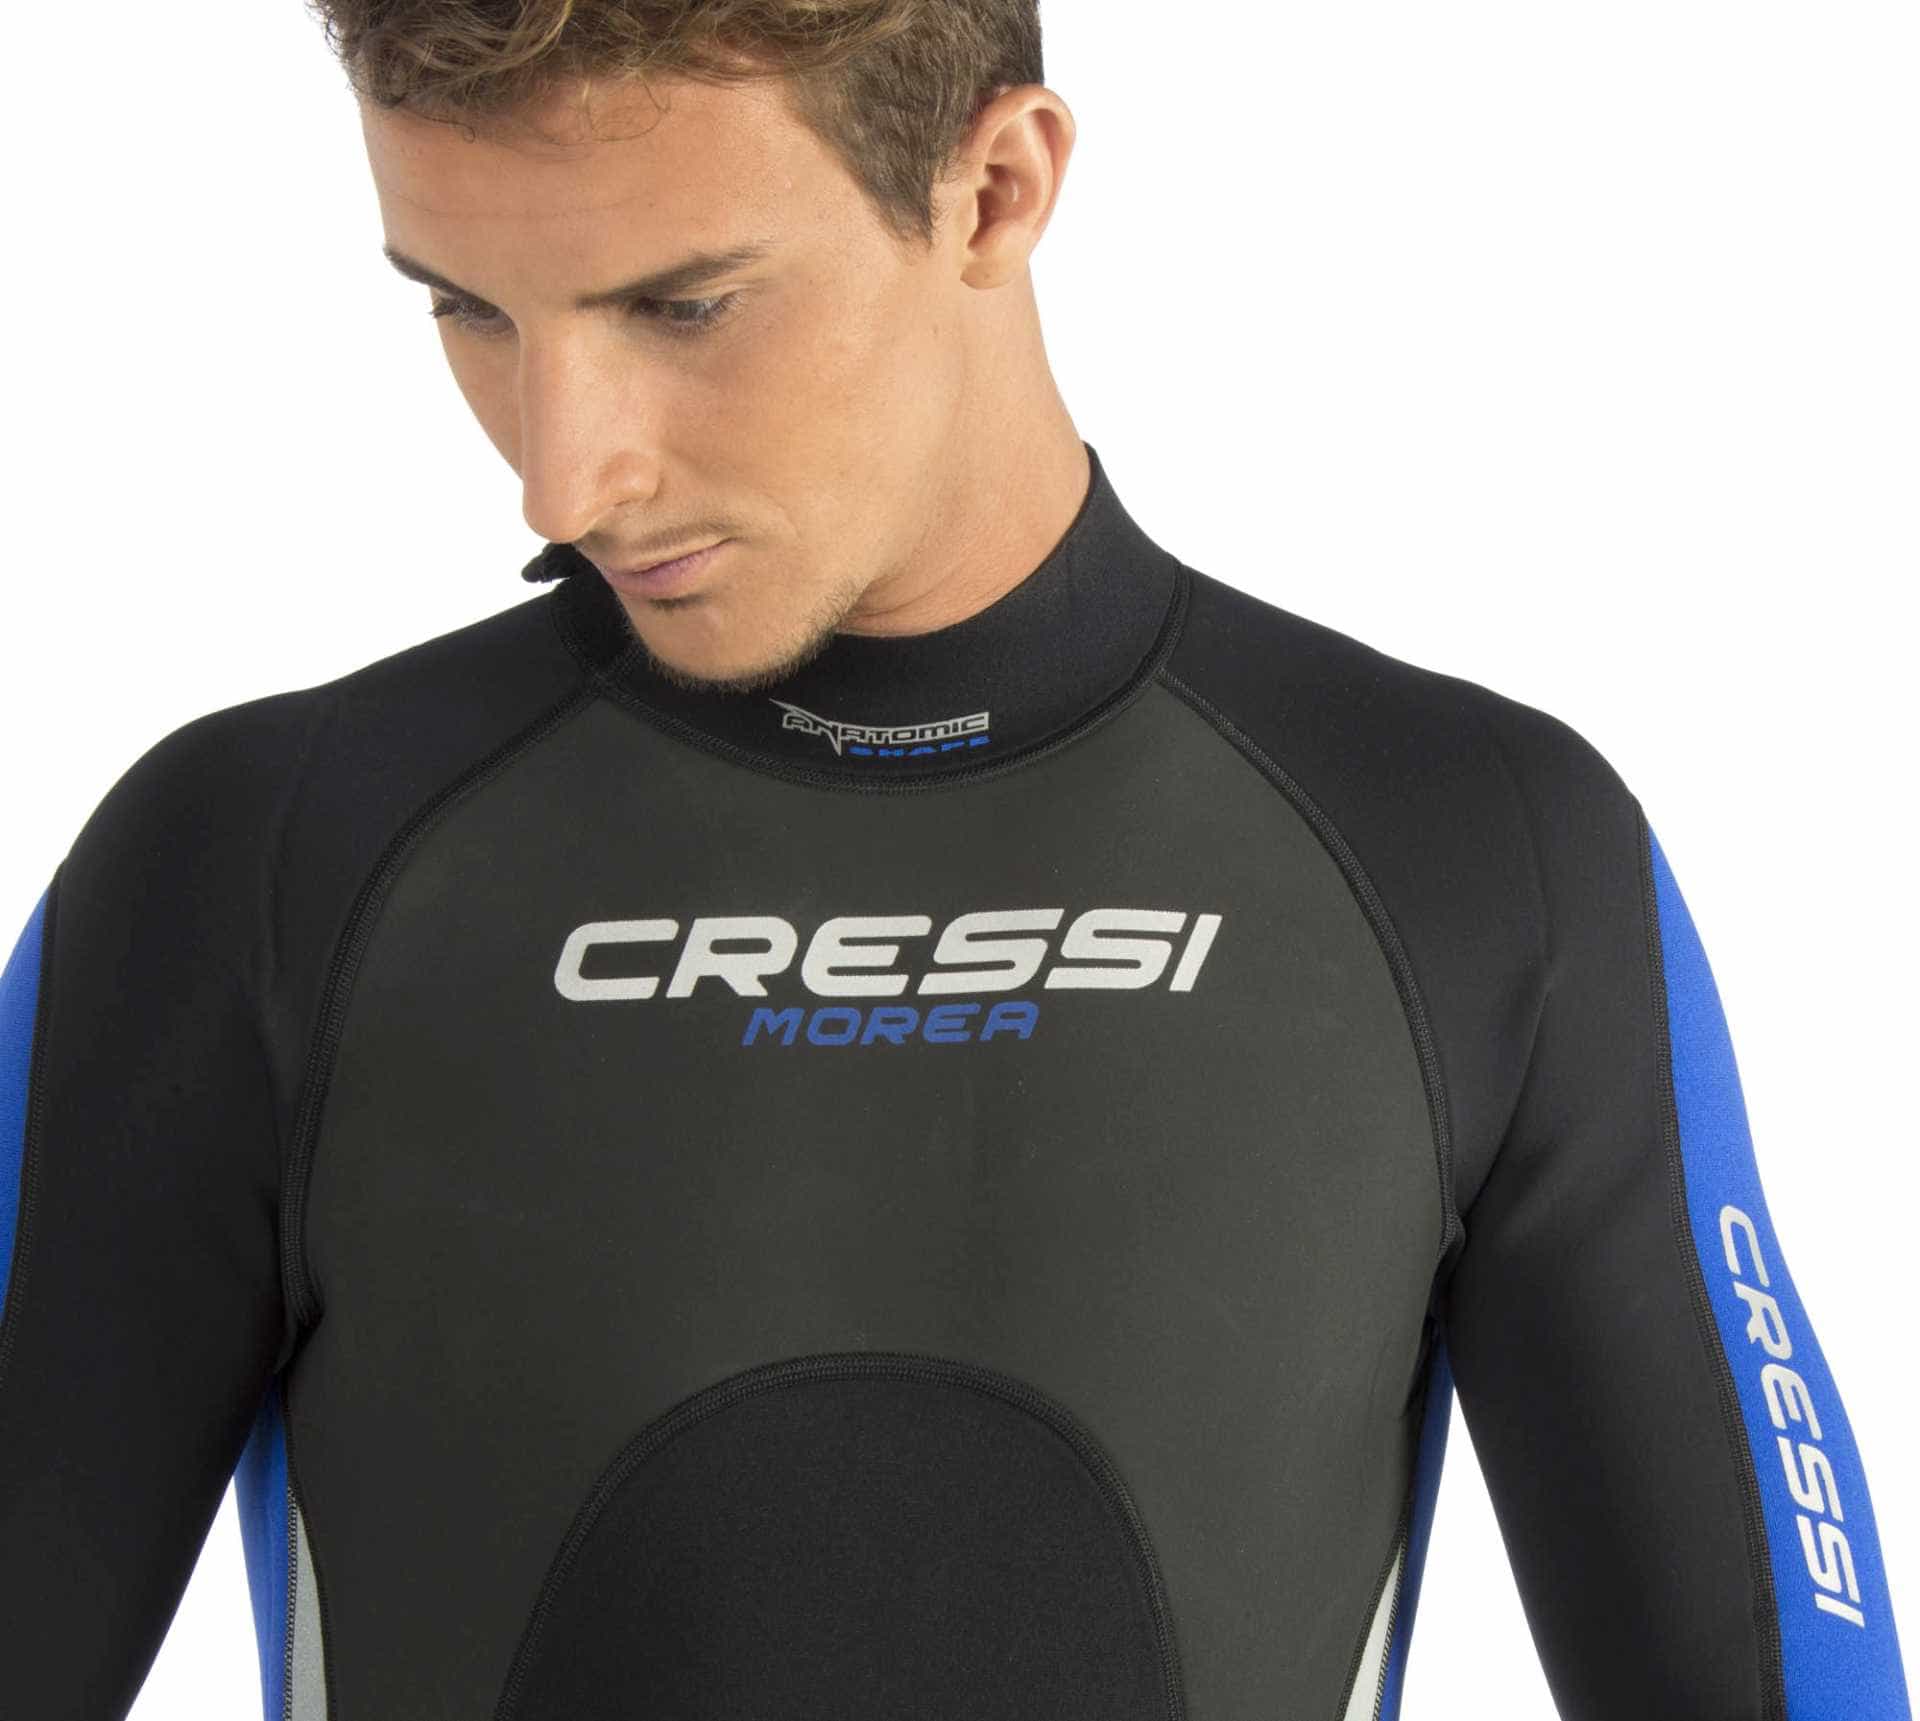 Man wearing Cressi Morea 3mm wetsuit